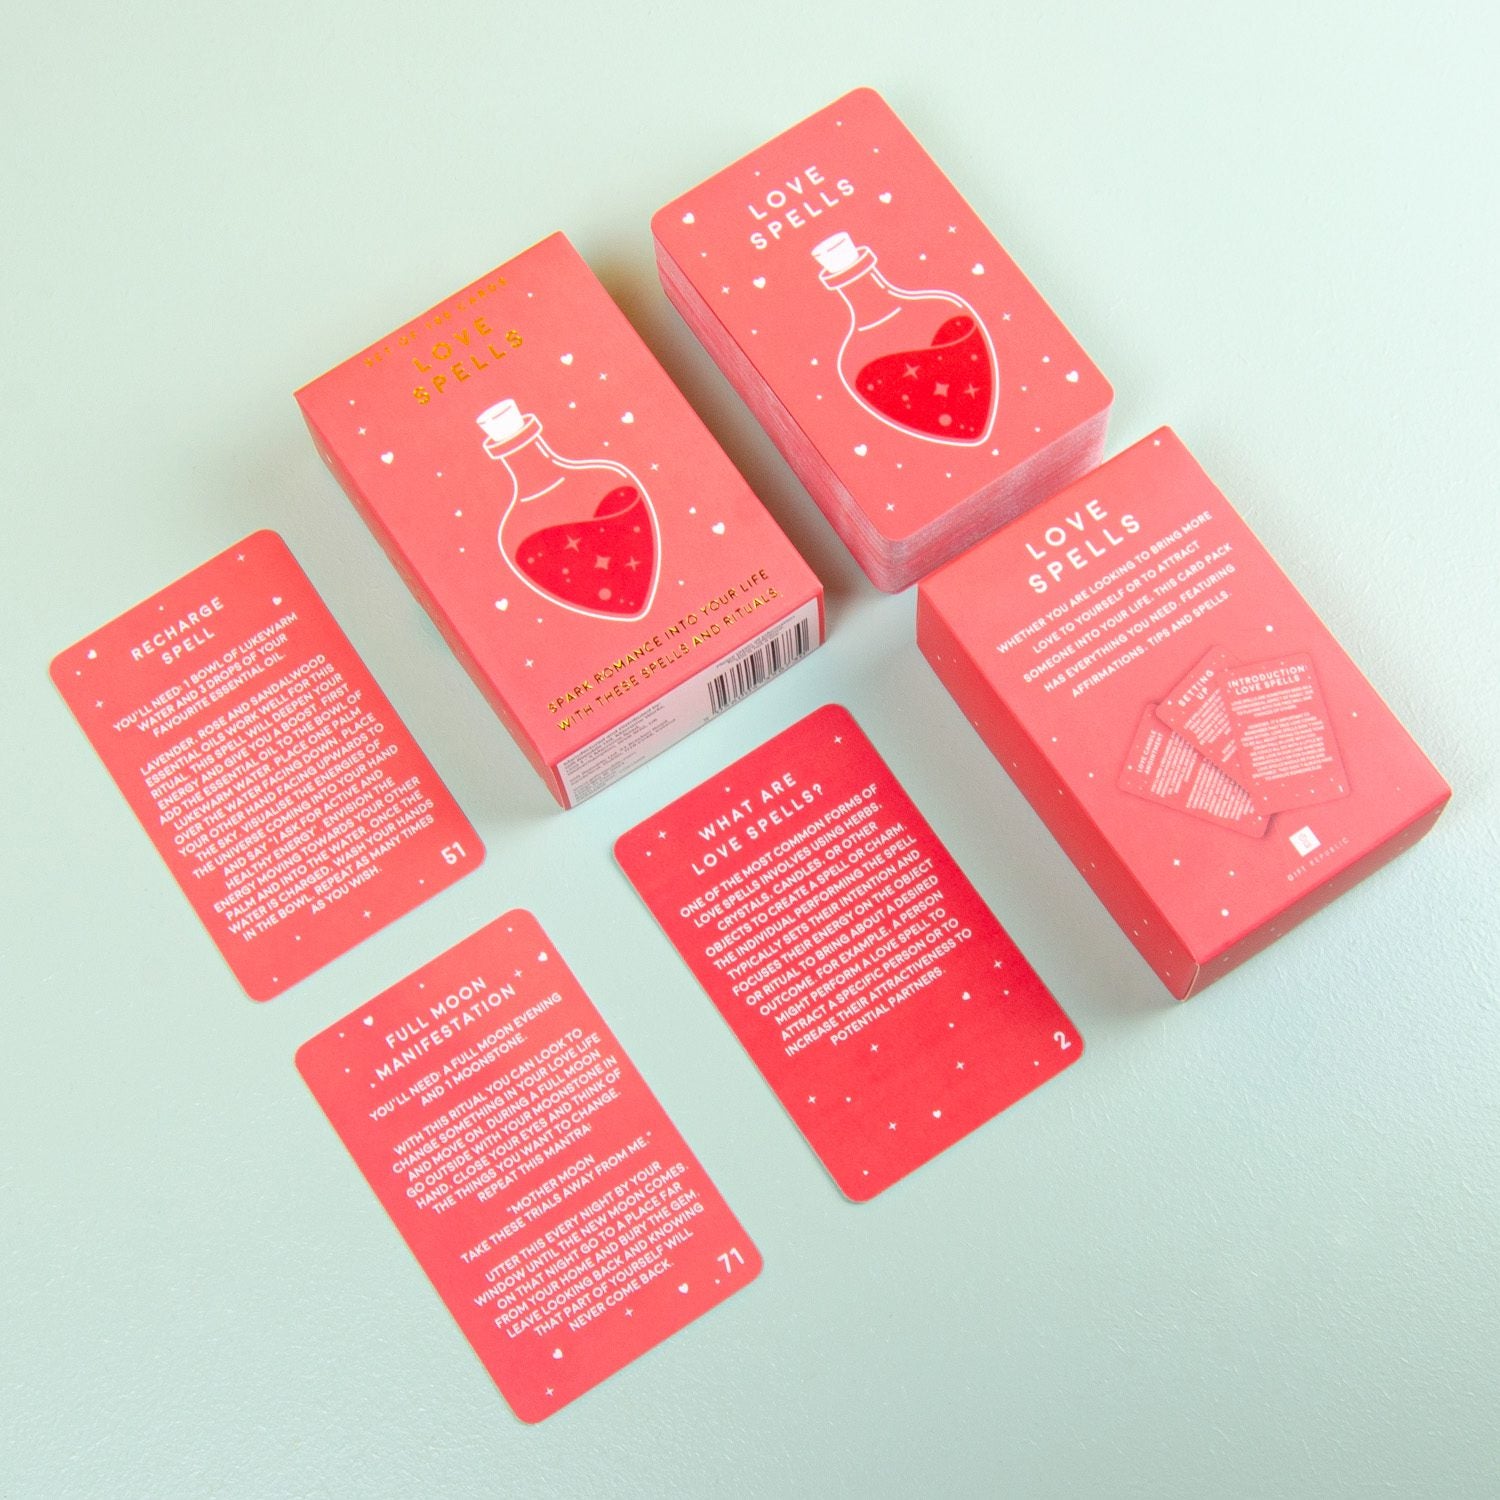 Love Spells Novelty Card Pack